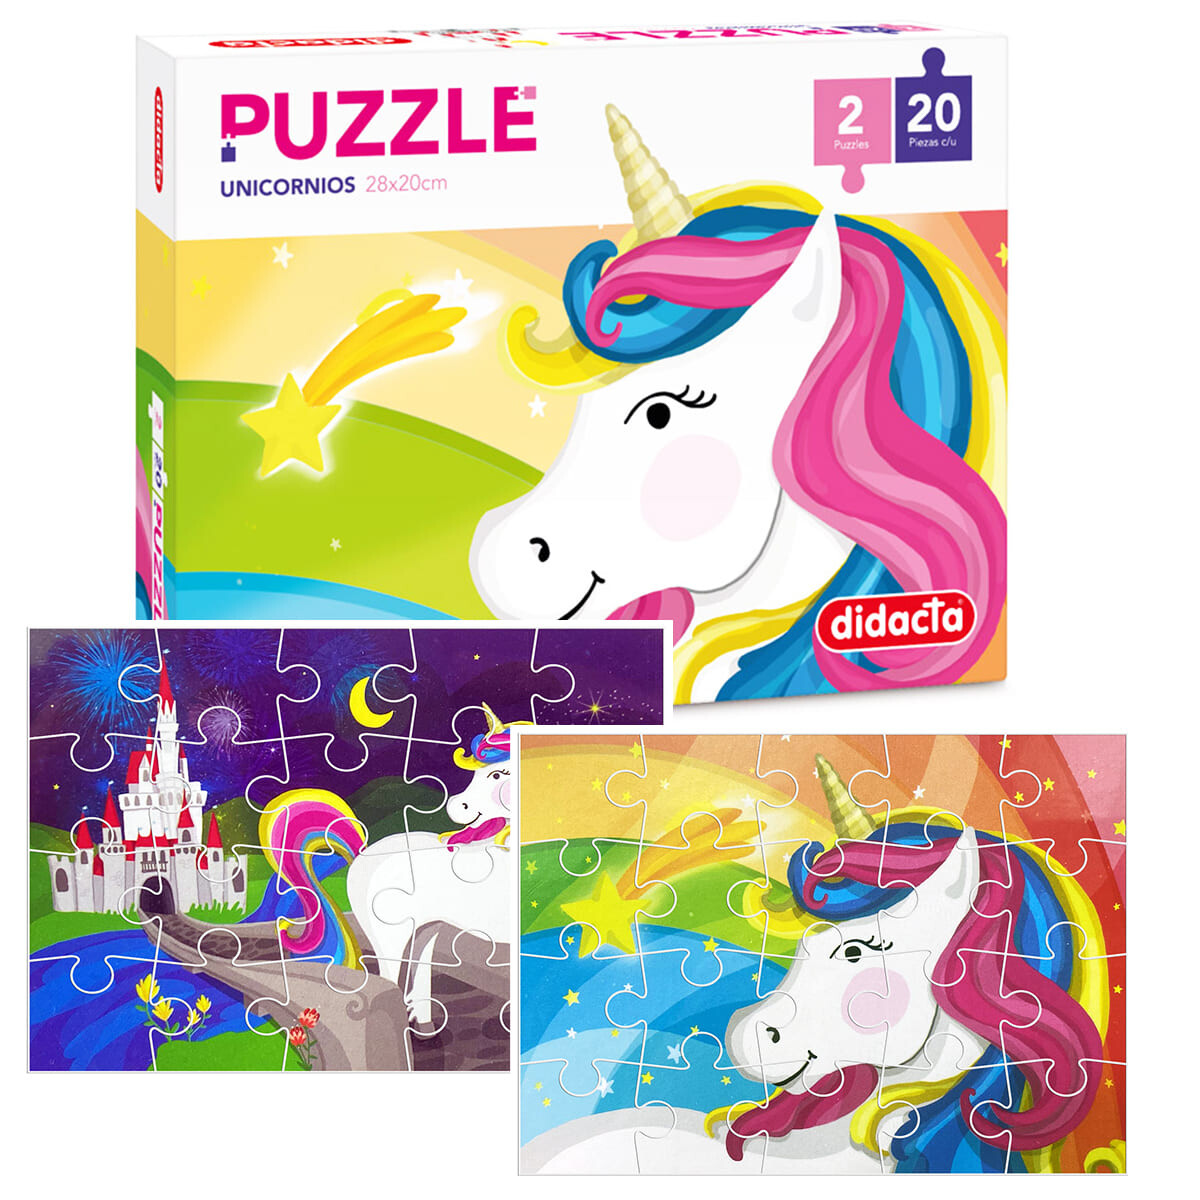 Puzzle Rompecabezas Pack X2 Didacta Unicornio 20pcs 